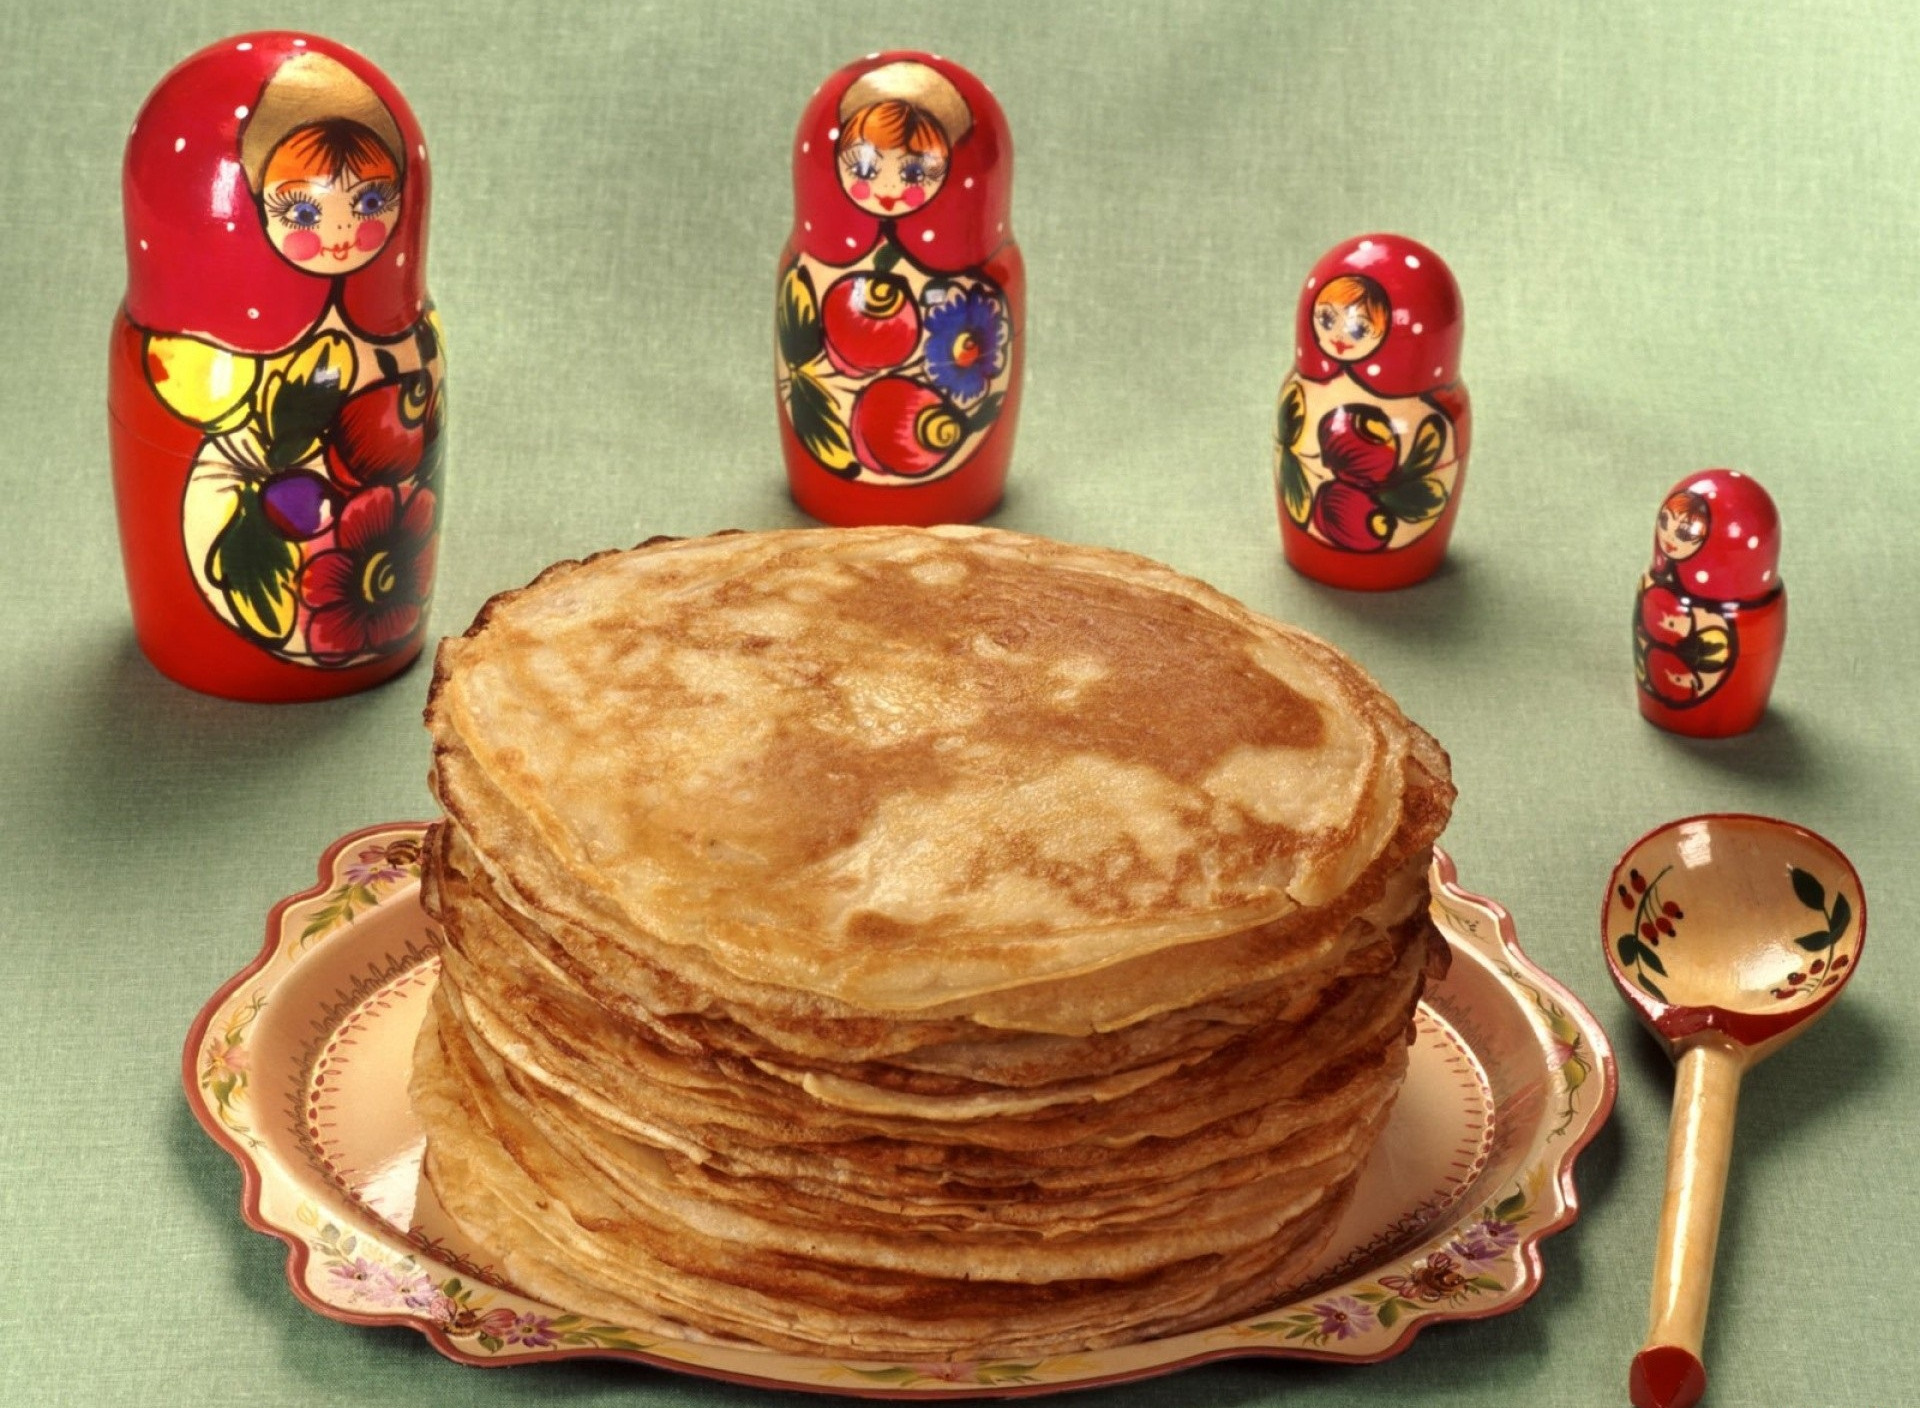 Русские национальные блюда